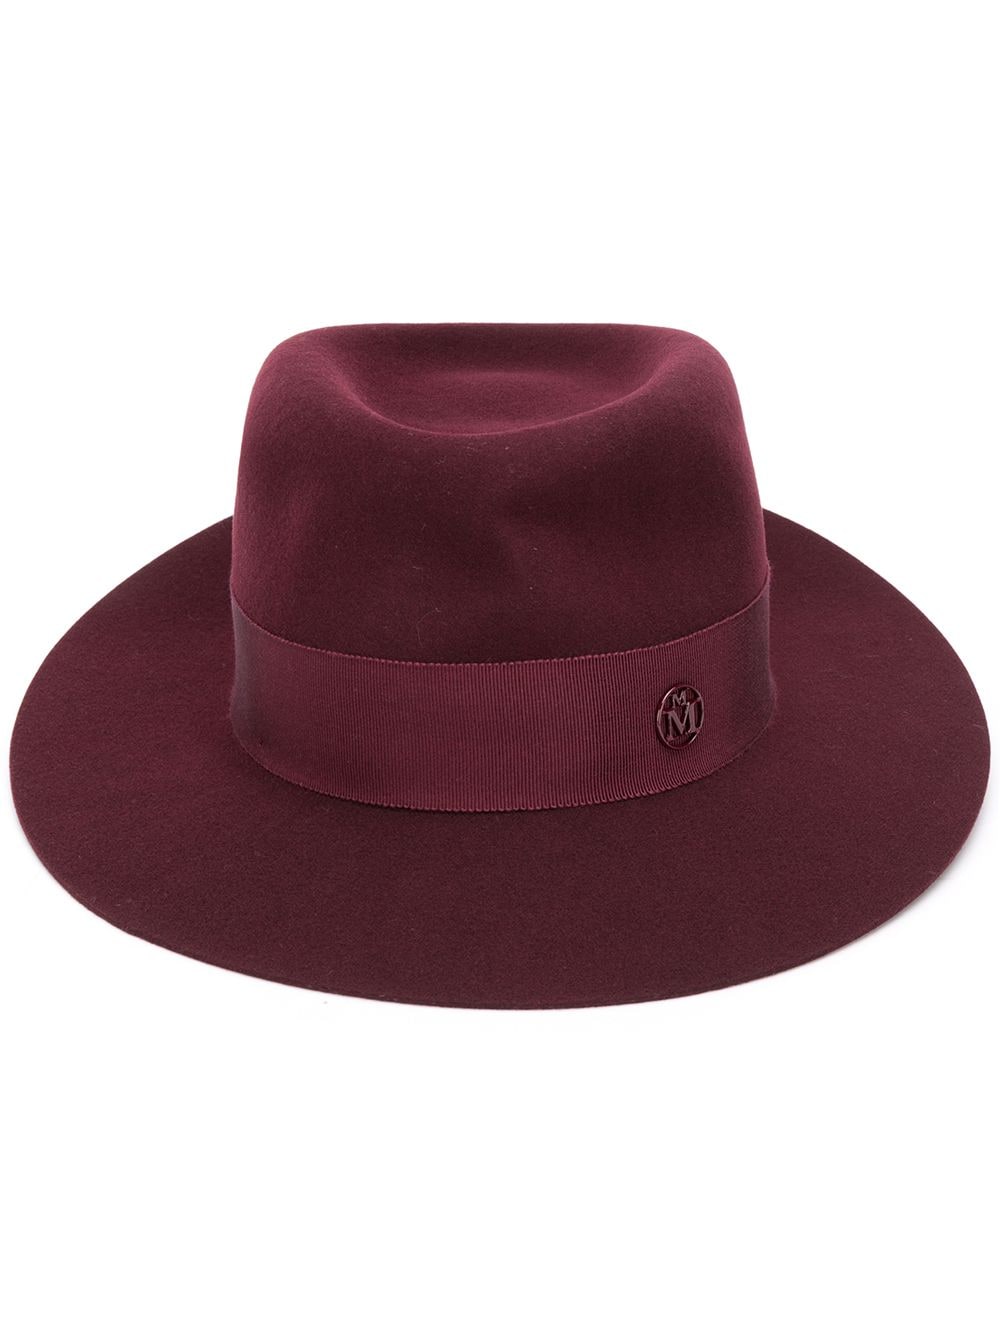 Maison Michel André felt Fedora hat - Red von Maison Michel